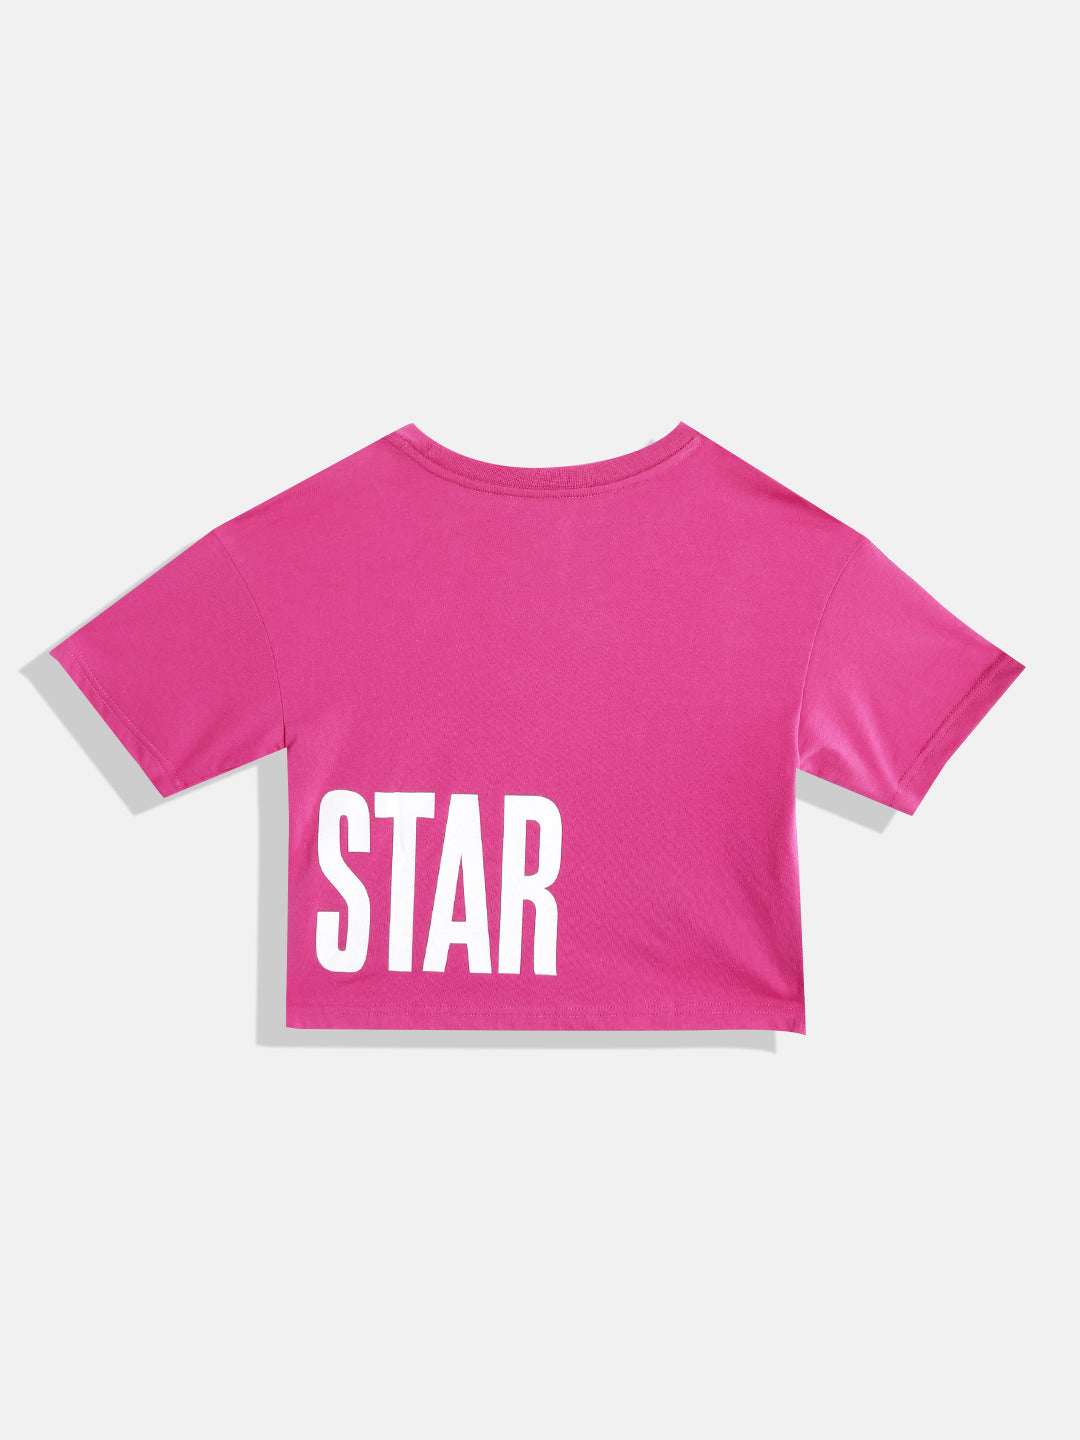 Converse All Star Wrap Tee T Shirt Converse   